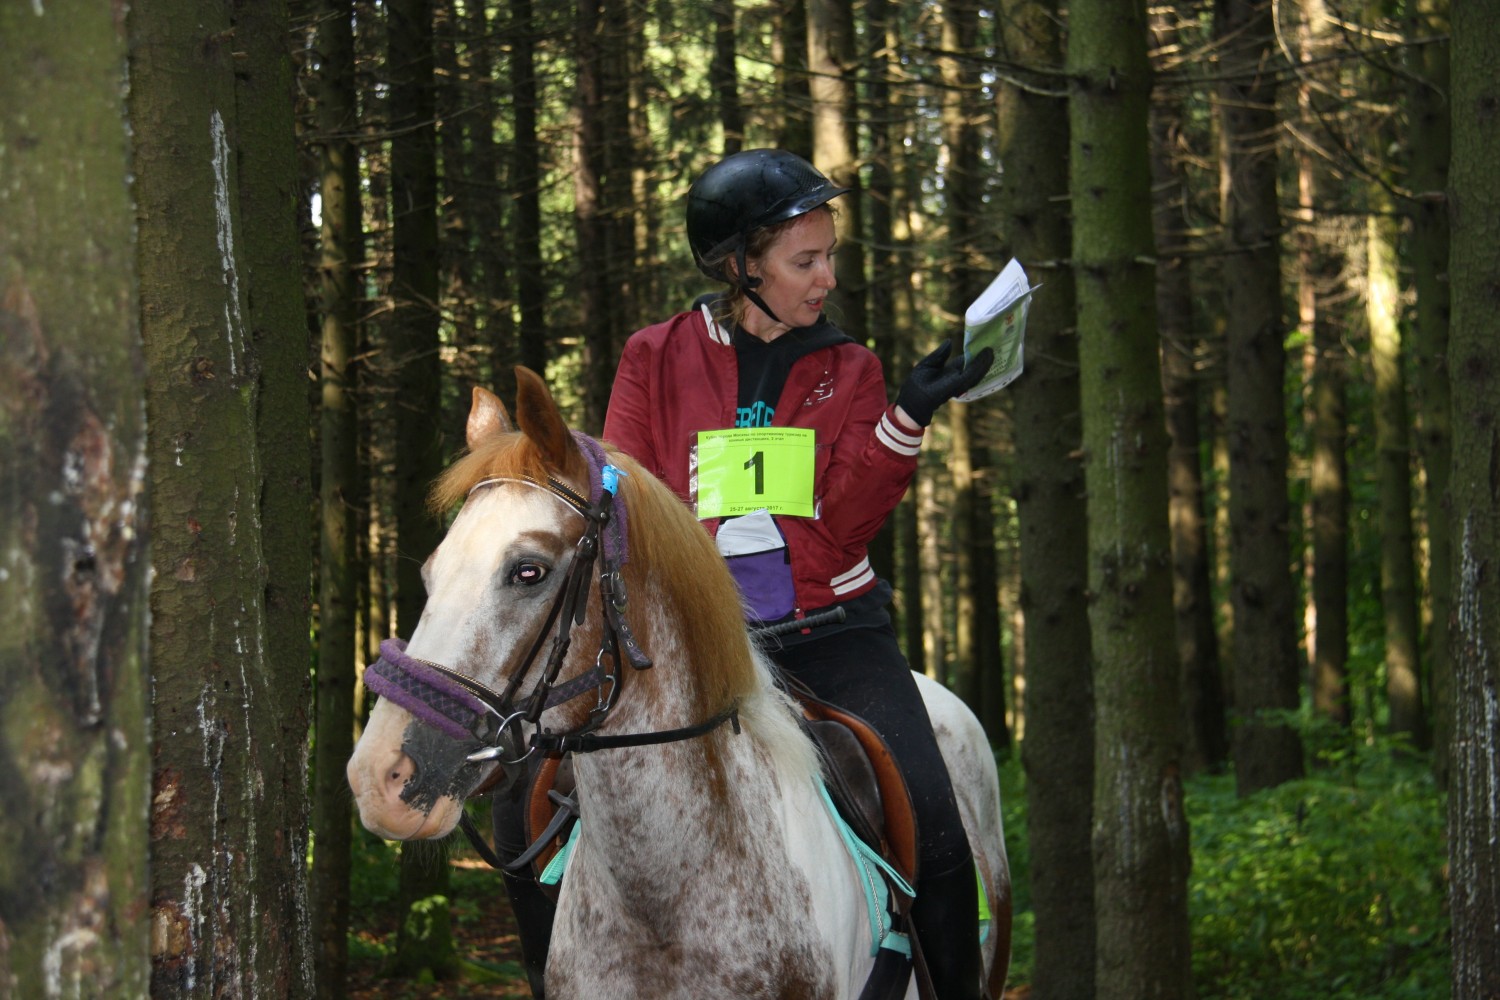 Ориентирование на лошадях в рамках Длинной дистанции на соревнованиях по спортивному туризму на конных дистанциях